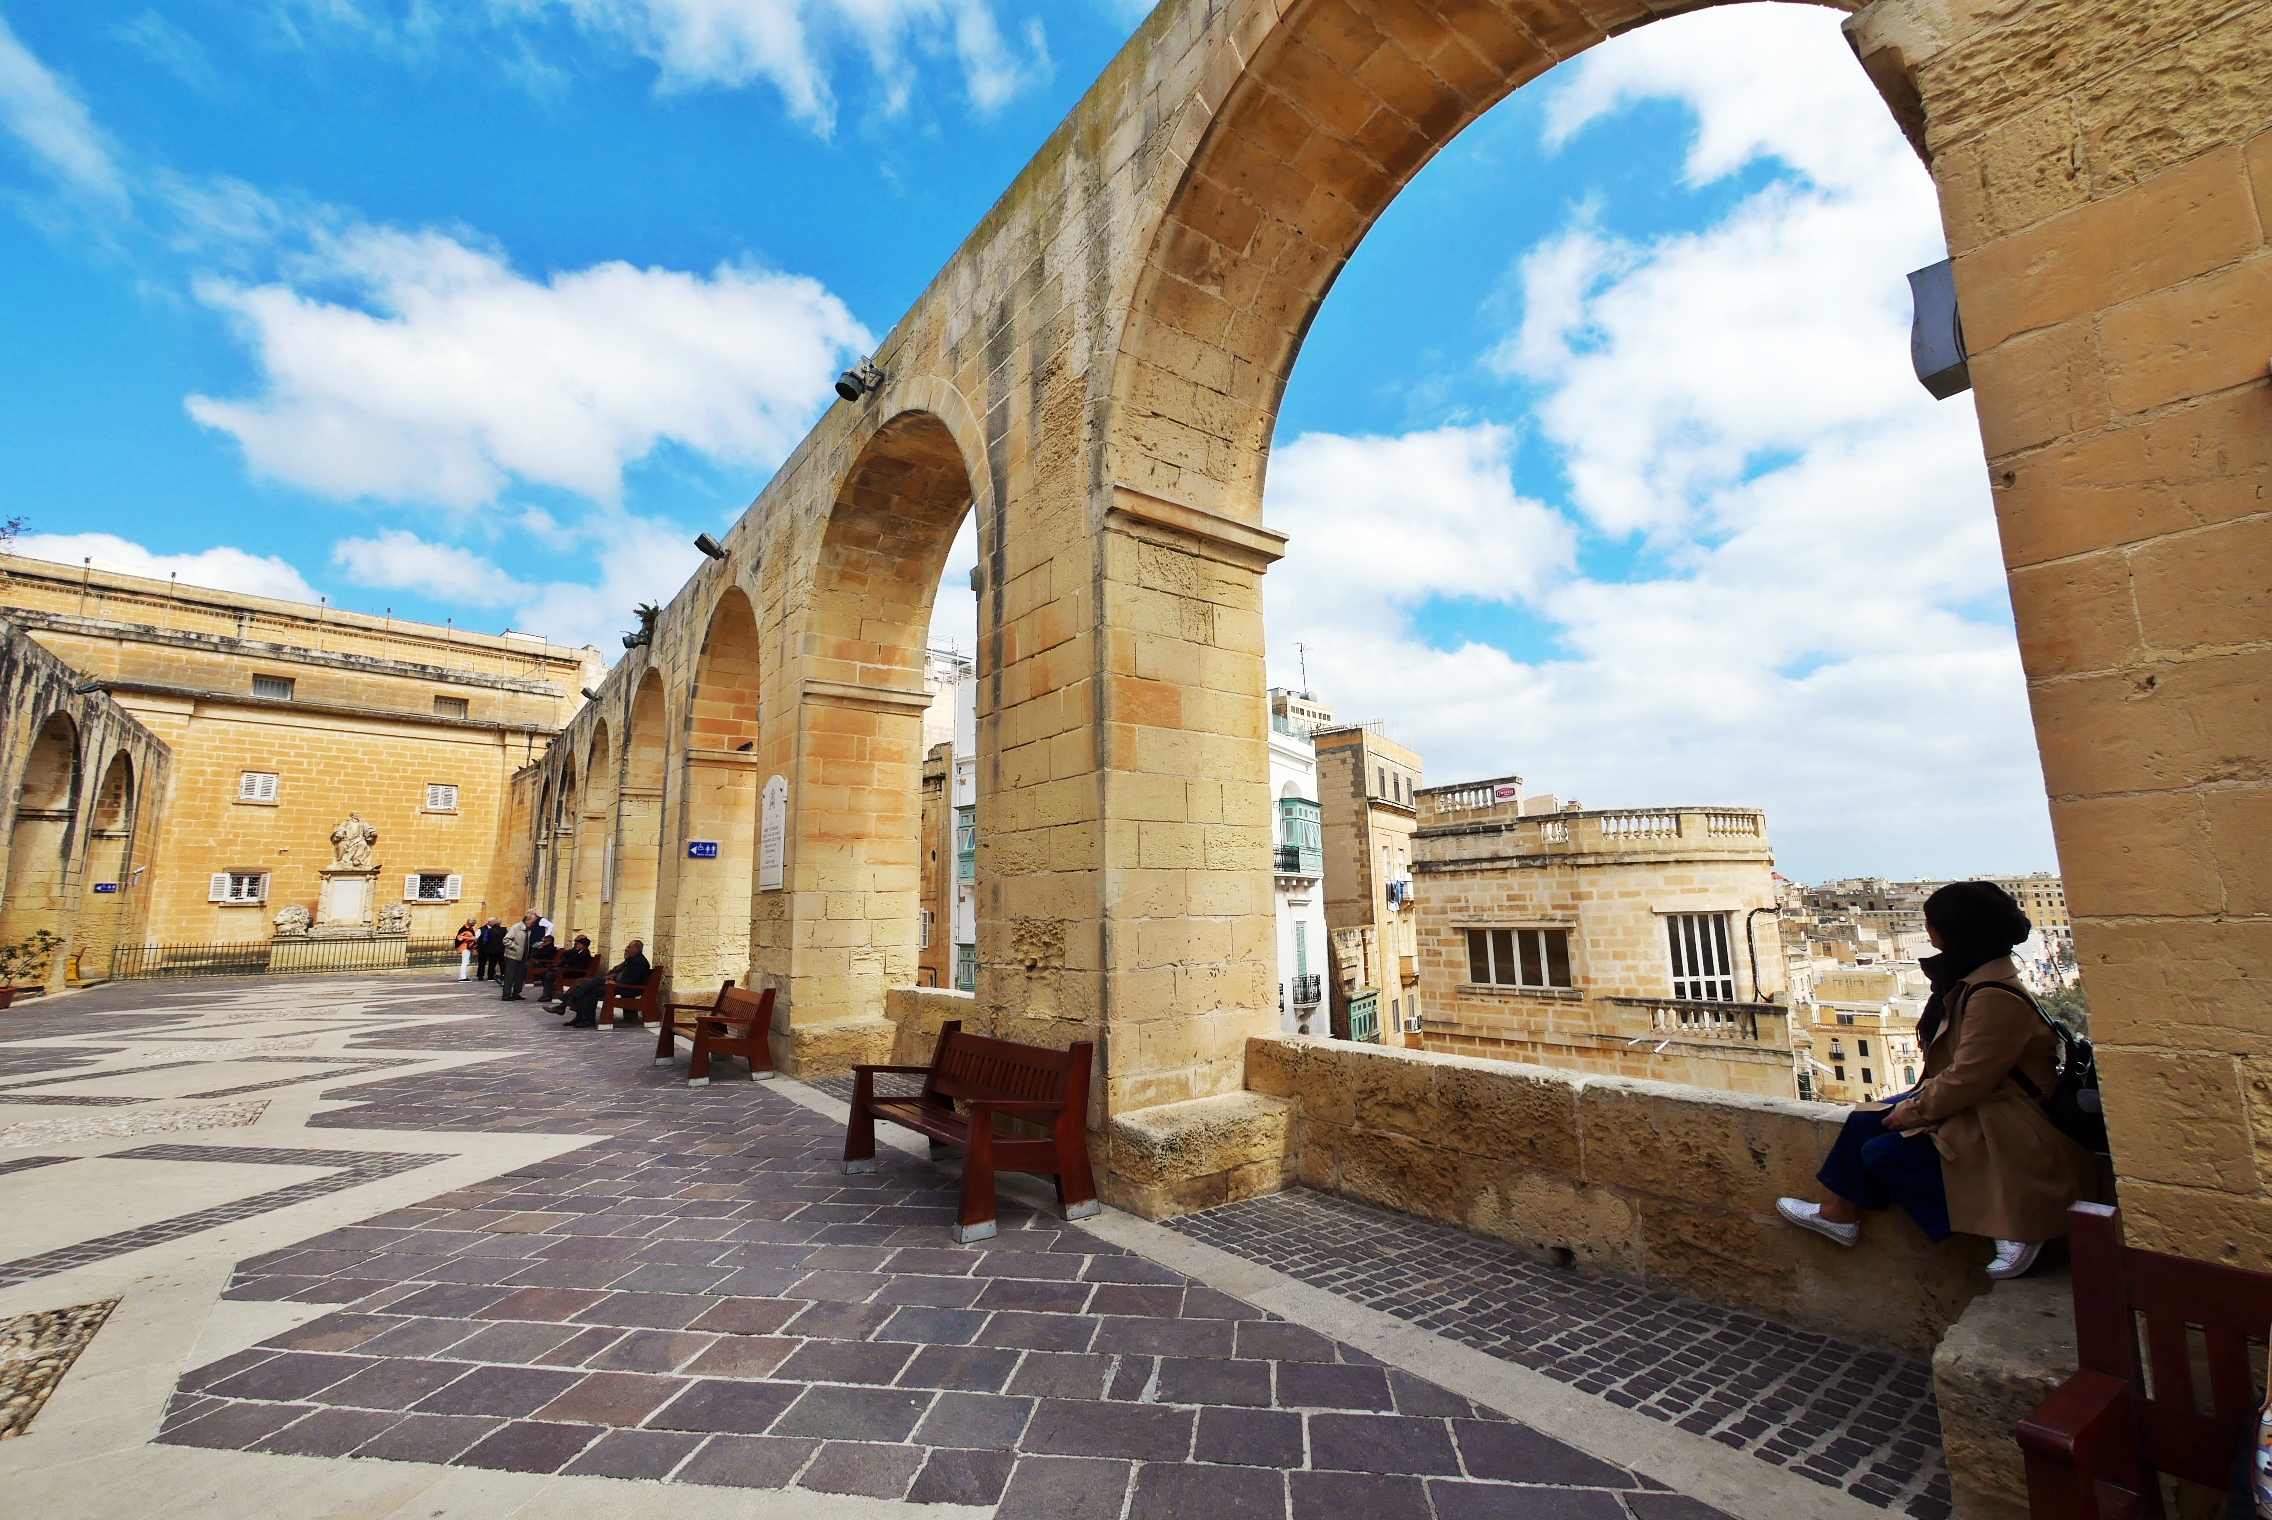 『歐洲。地中海』 馬爾他首都 瓦萊塔Valletta｜是歐洲名城也是世界上最小的首都之一  世界上最集中的歷史文化區  尊貴的金色騎士之城｜2019/0313-0318 歐洲馬爾他六天五夜之旅